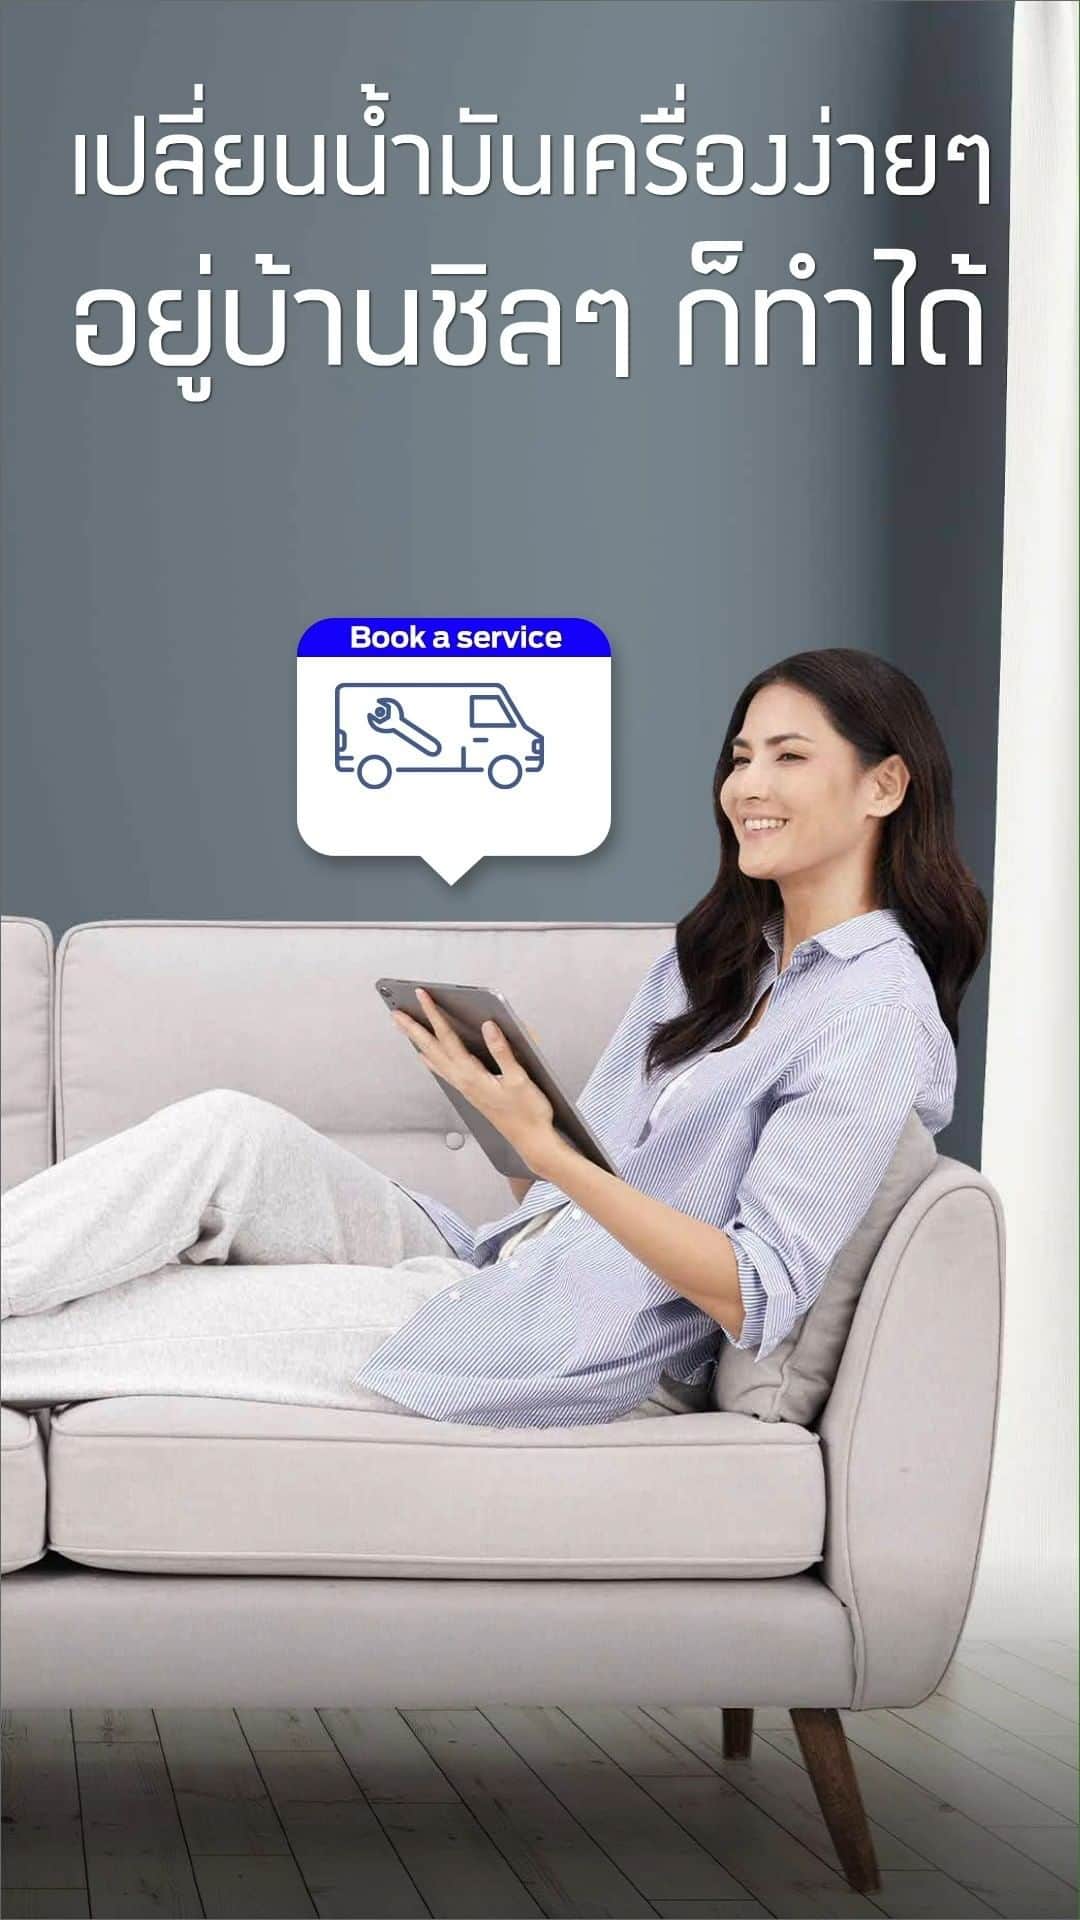 Ford Thailandのインスタグラム：「นั่งชิลล์อยู่บ้าน ก็ดูแลรถของคุณได้สะดวกสบายทุกที่ด้วยบริการ Mobile Service จาก Ford ที่ให้บริการทั้งเปลี่ยนน้ำมันเครื่อง เช็กสภาพรถ เปลี่ยนแบตเตอรี่ เปลี่ยนใบปัดน้าฝนและหลอดไฟ ฯลฯ แค่นัดหมาย*ออนไลน์ผ่านแอปฯ FordPass หรือติดต่อศูนย์บริการฟอร์ด เพื่อรับบริการเข้าไปดูแลรถคุณถึงหน้าบ้าน  ดูรายละเอียดและดาวน์โหลดแอปพลิเคชัน FordPass ได้ที่ https://www.ford.co.th/owner/ford-family-guarantee/fordpass/  *โดยนัดหมายล่วงหน้าอย่างน้อย 3 วัน #FordFamliyGuarantee #ฟอร์ดการันตีความใส่ใจ #FordMobileService」